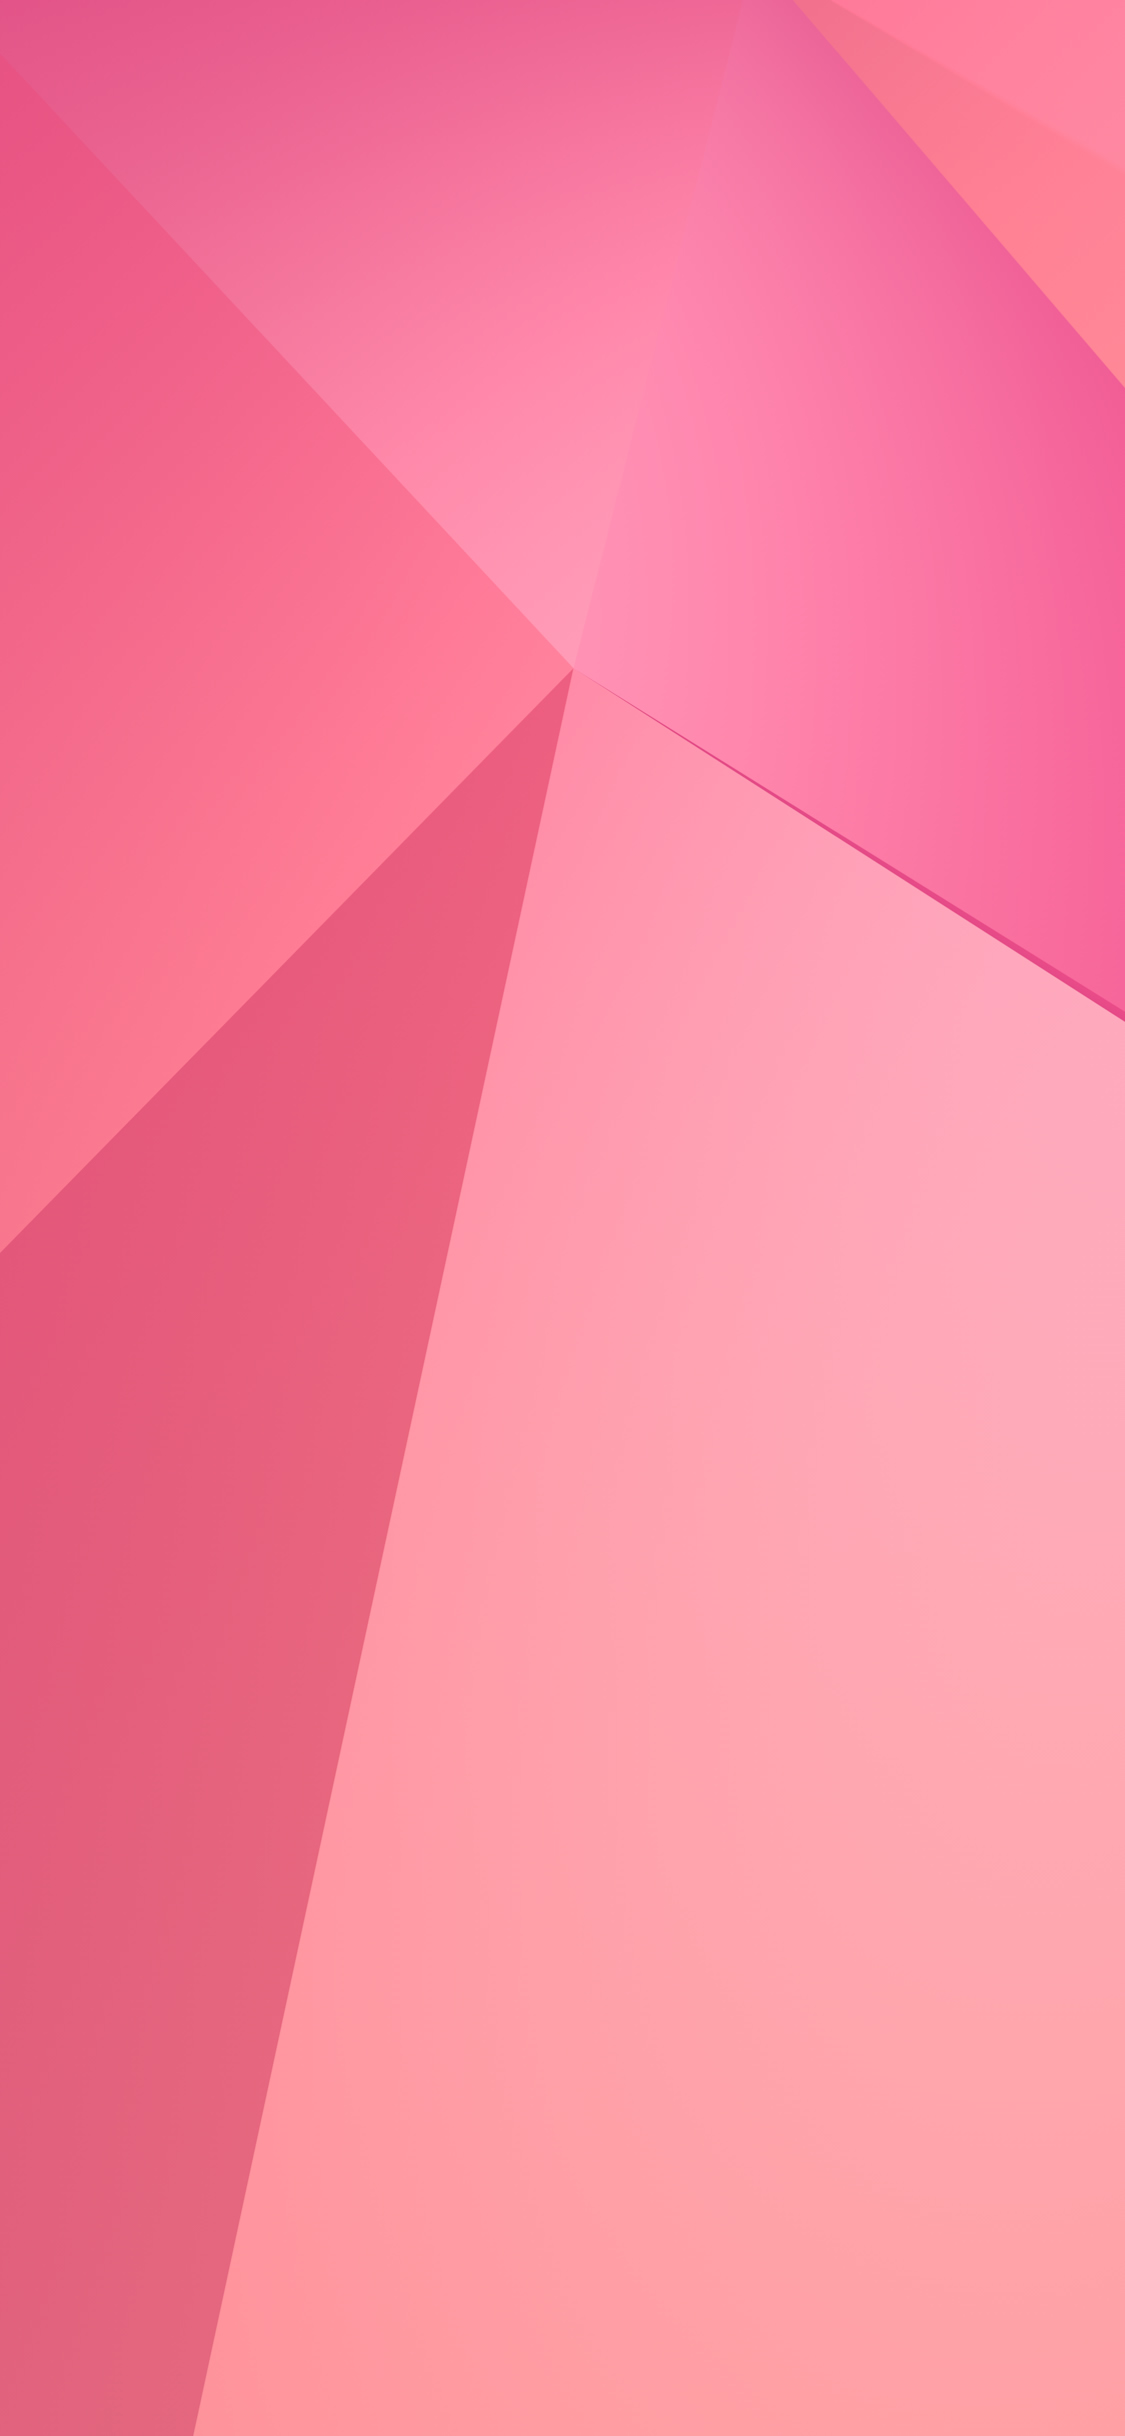 抽象的なピンクの三角形iphonex壁紙 1125 2436 Iphoneチーズ